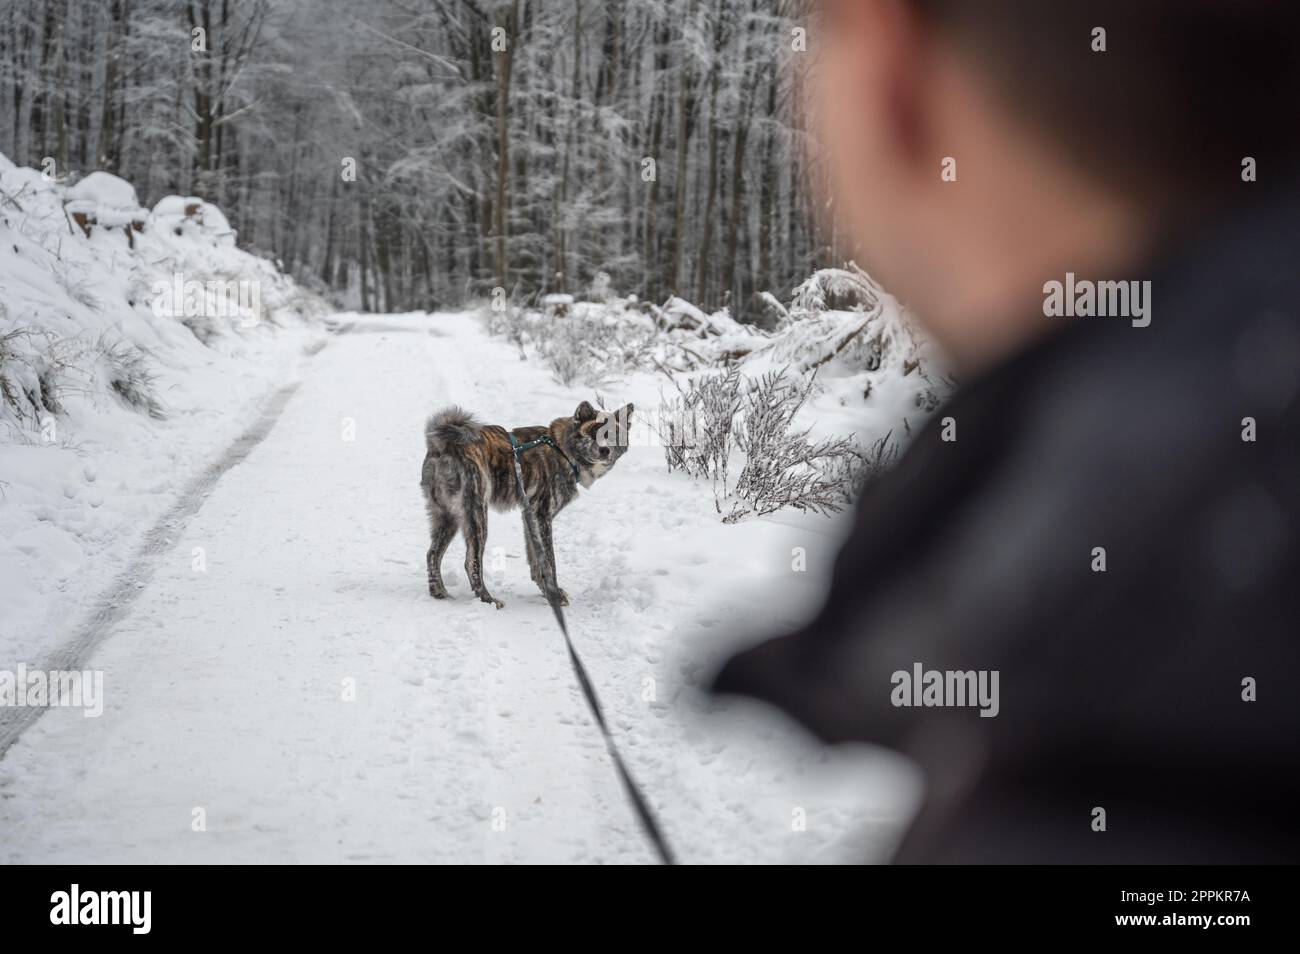 Un giovane con i capelli castani corti cammina nella foresta il suo cane akita inu grigio durante l'inverno con molta neve, entrambi guardarsi l'un l'altro, si concentrano sullo sfondo Foto Stock